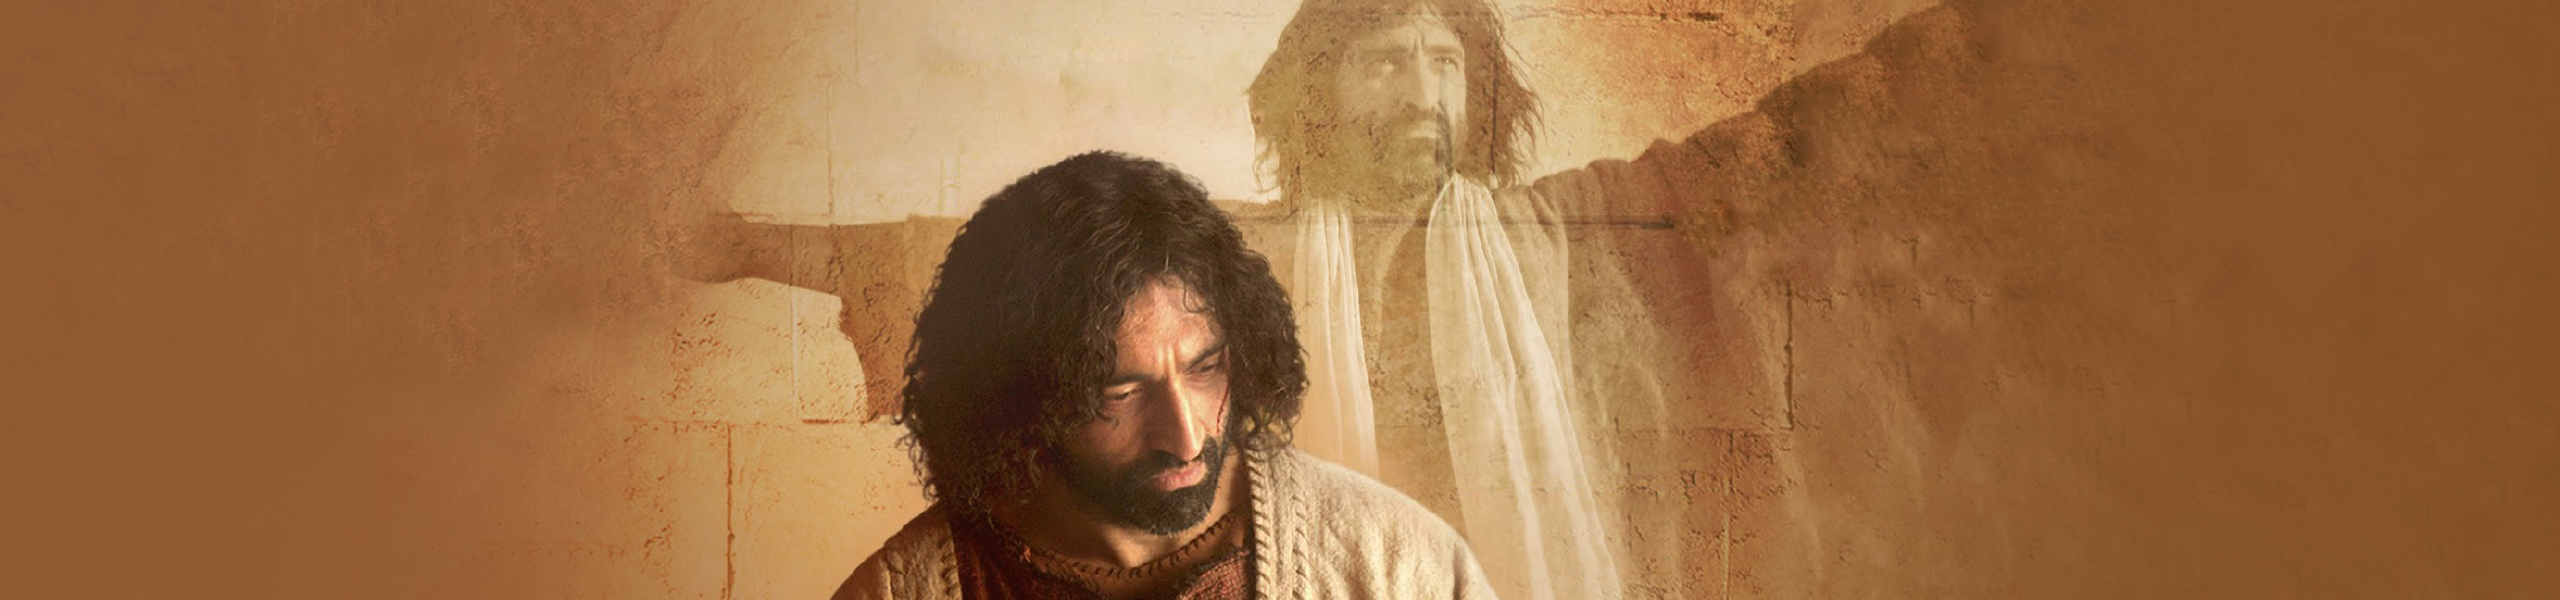 Jesus Revealed: Encountering the Authentic Jesus